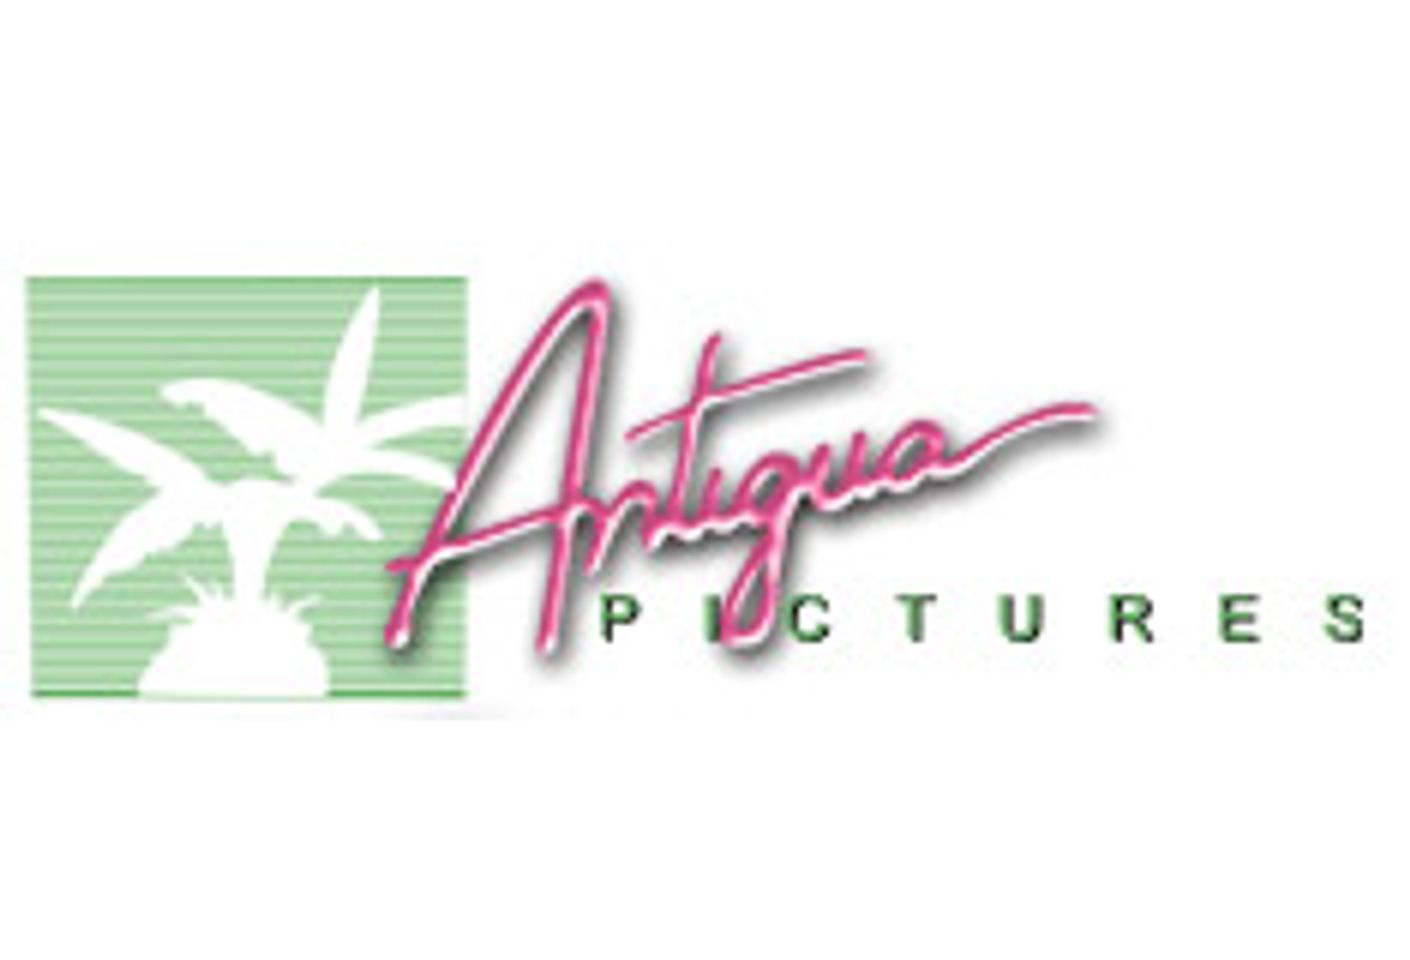 Antigua Searches for Directors